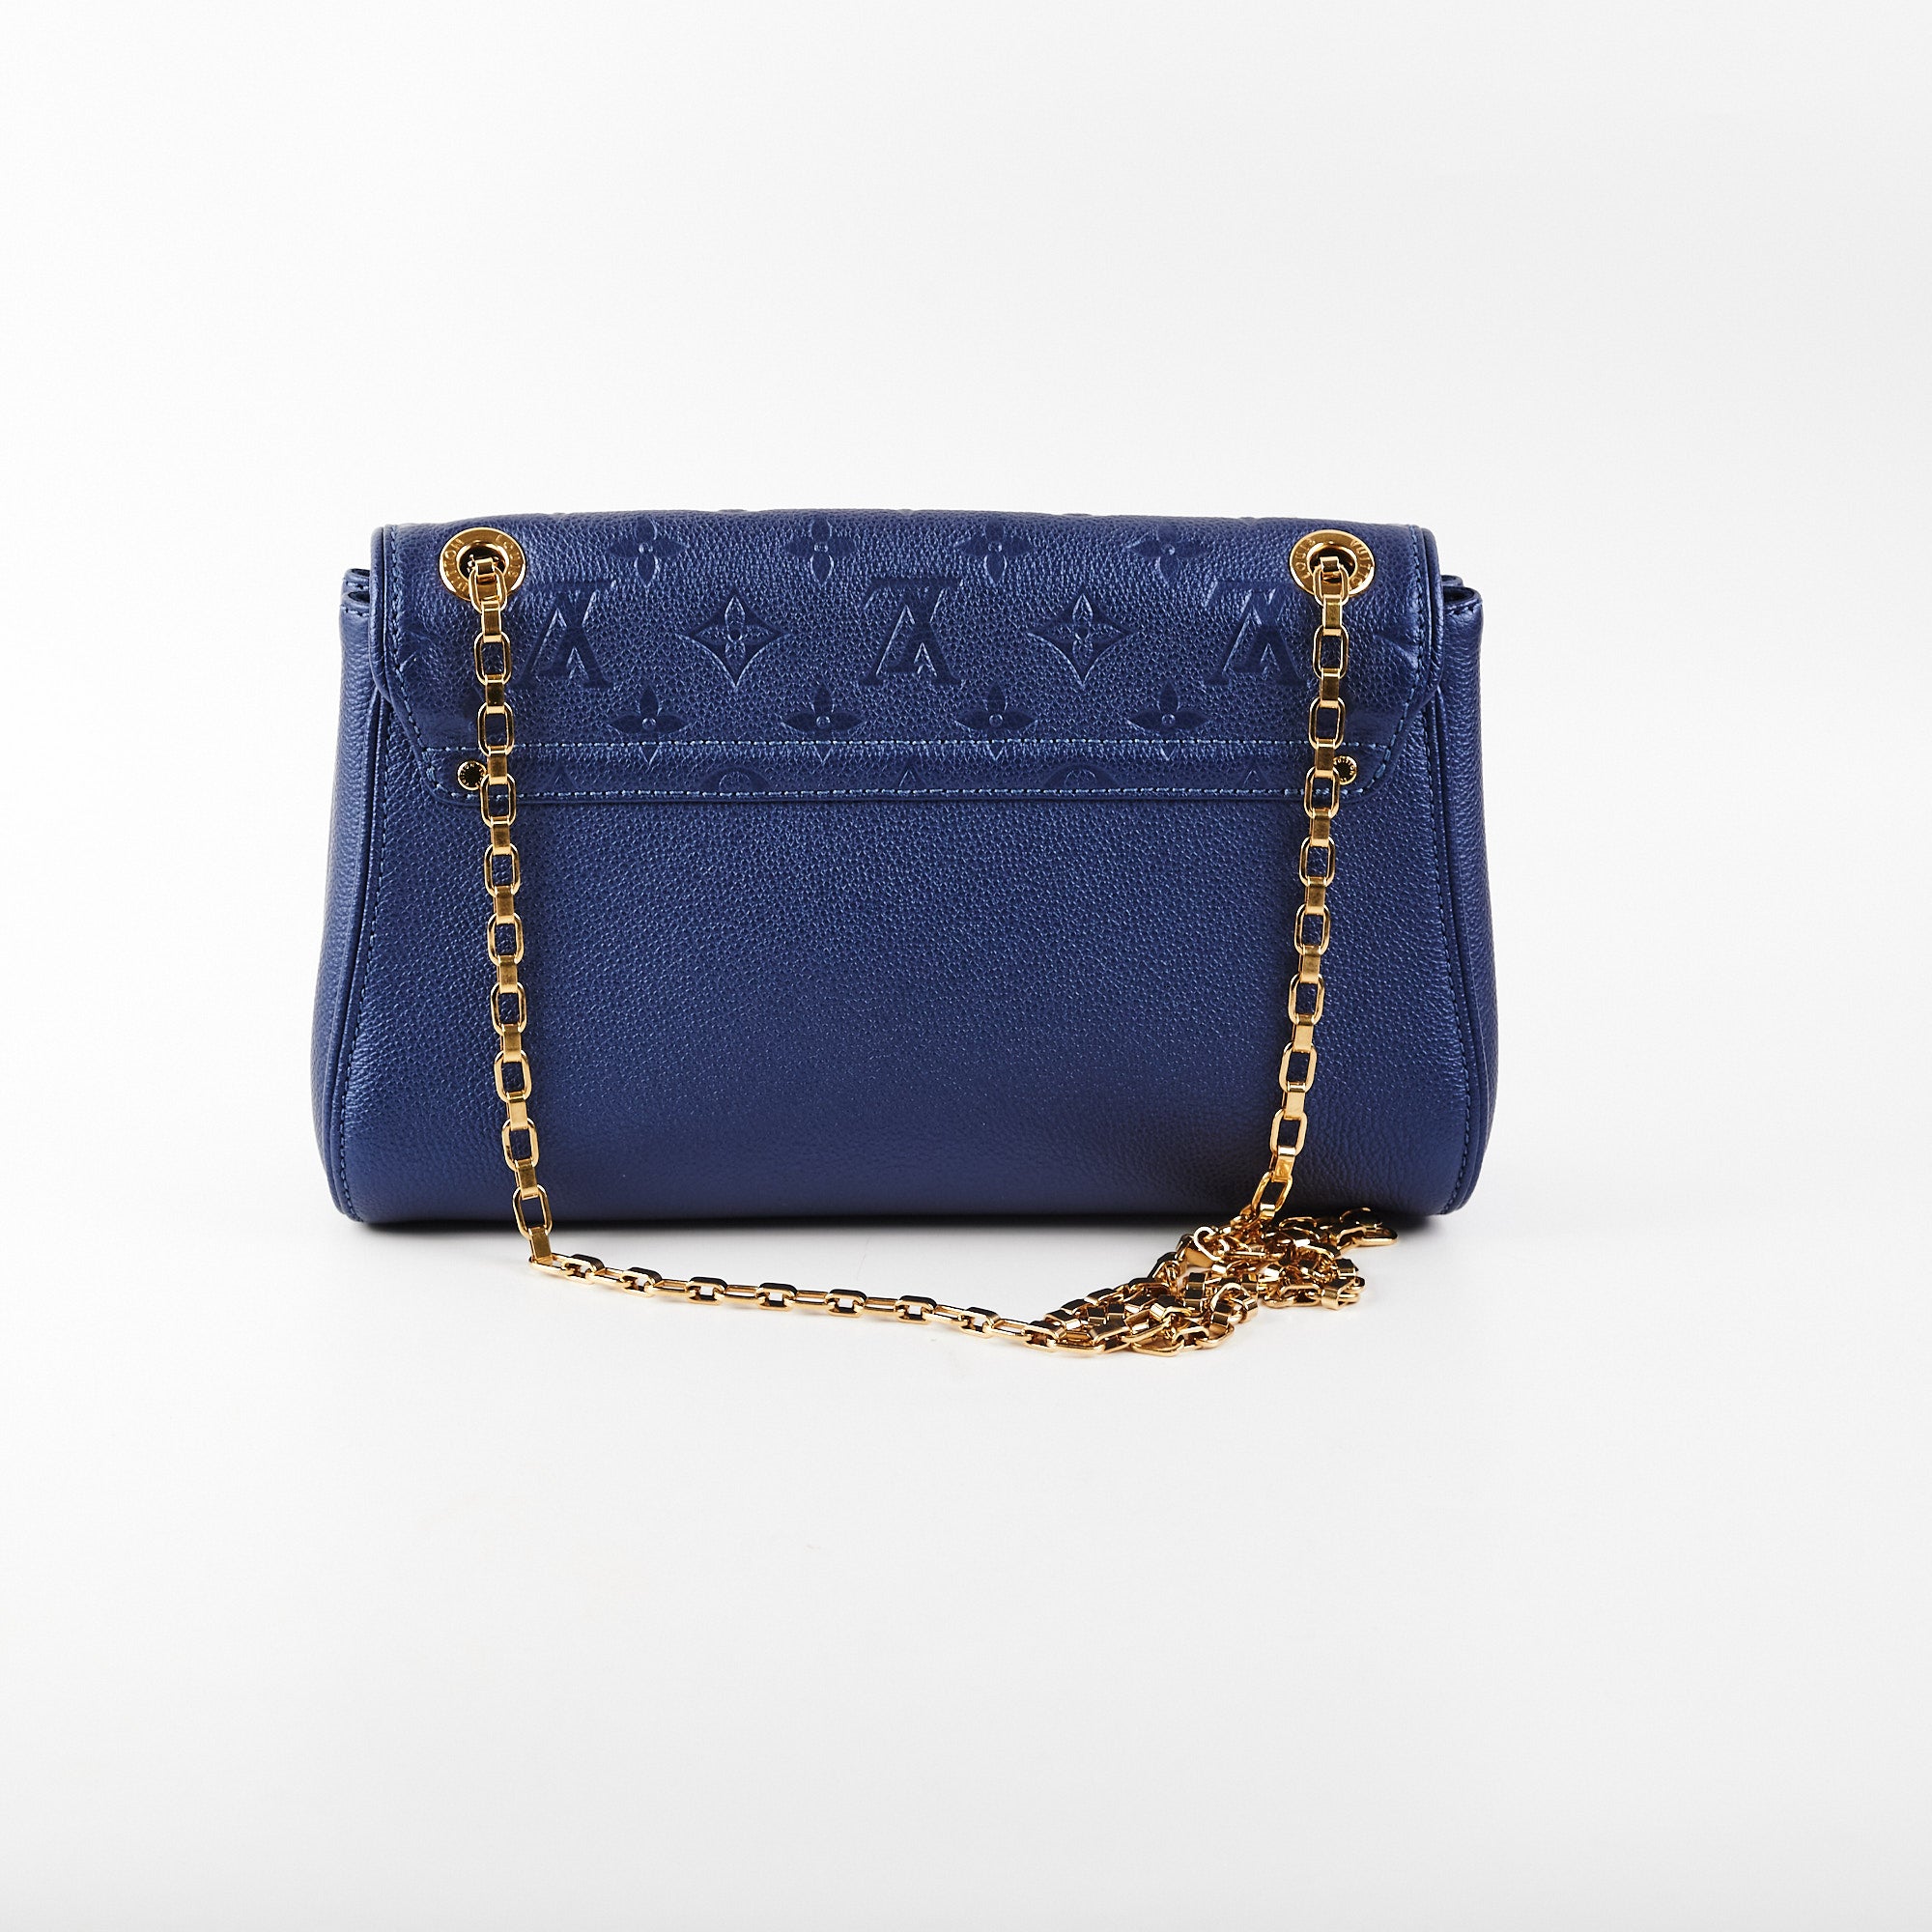 Louis Vuitton St Germain PM Shoulder Bag - THE PURSE AFFAIR